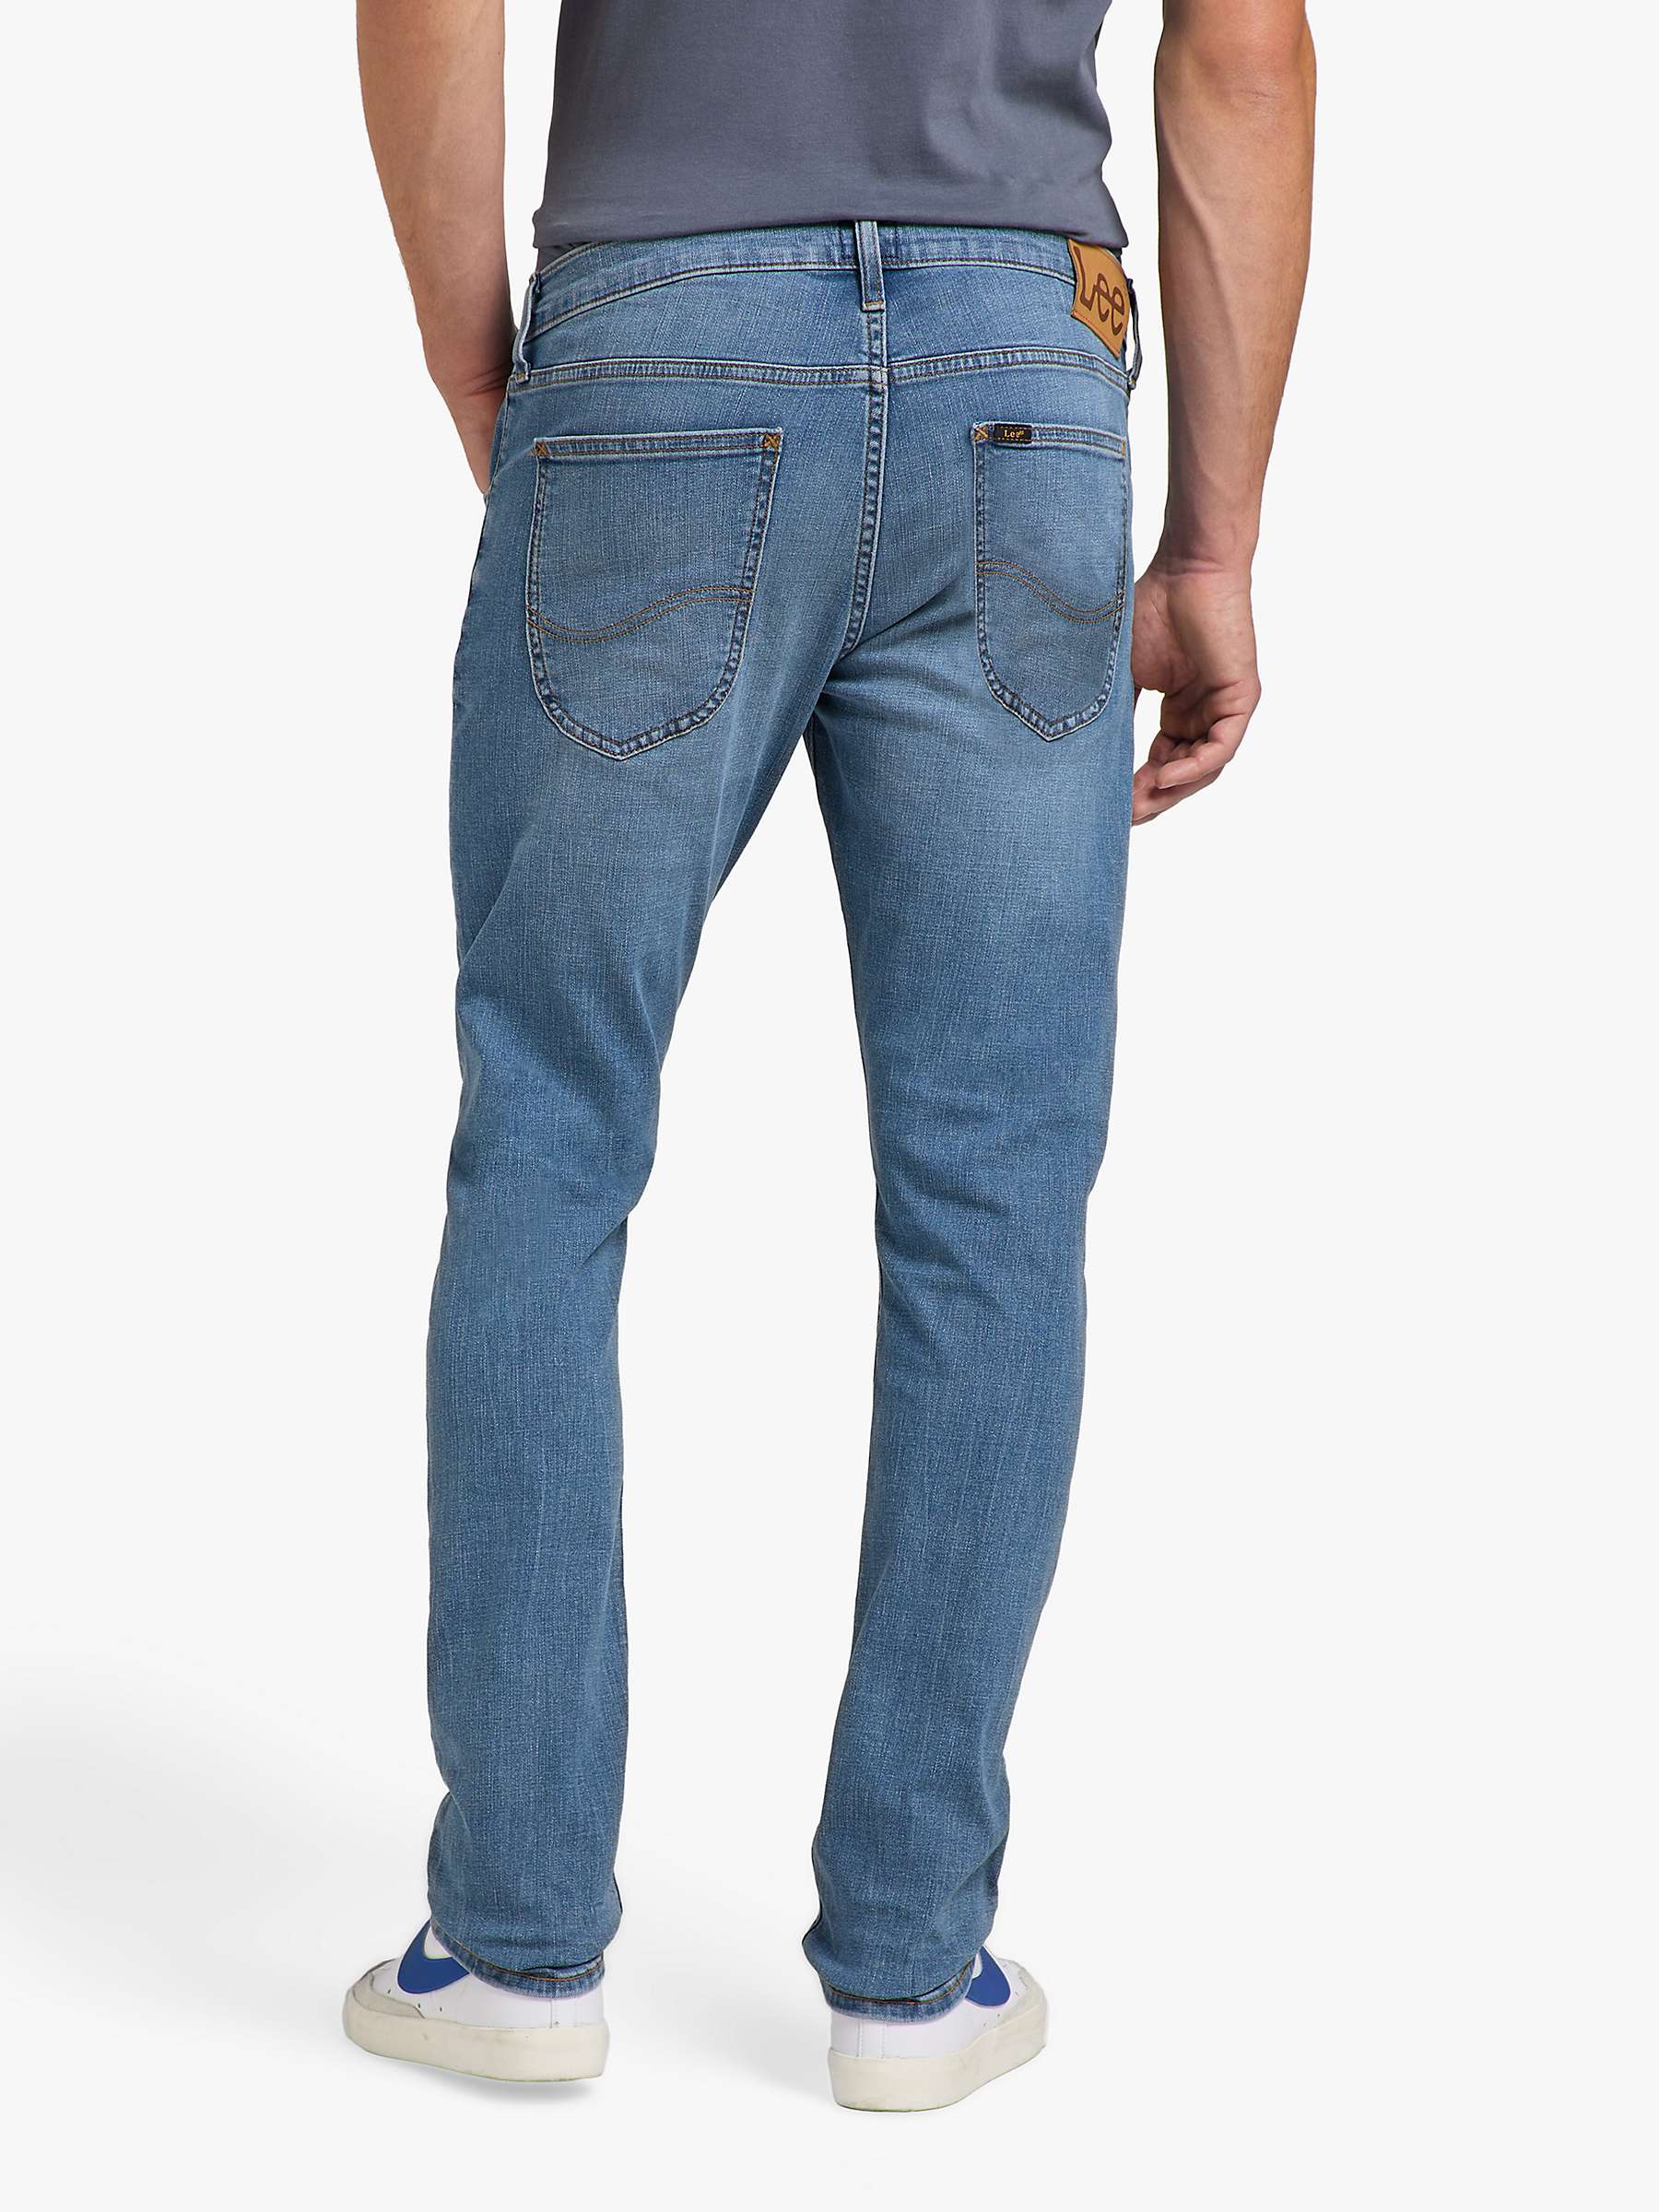 Buy Lee Cody Slim Denim Jeans, Blue Online at johnlewis.com